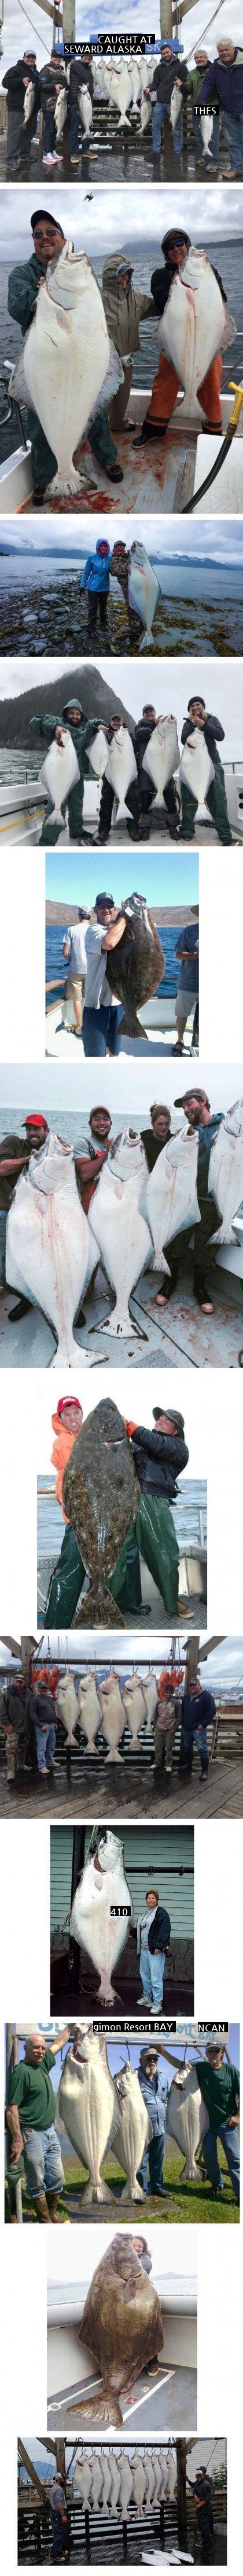 アラスカで獲れるヒラメの大きさ